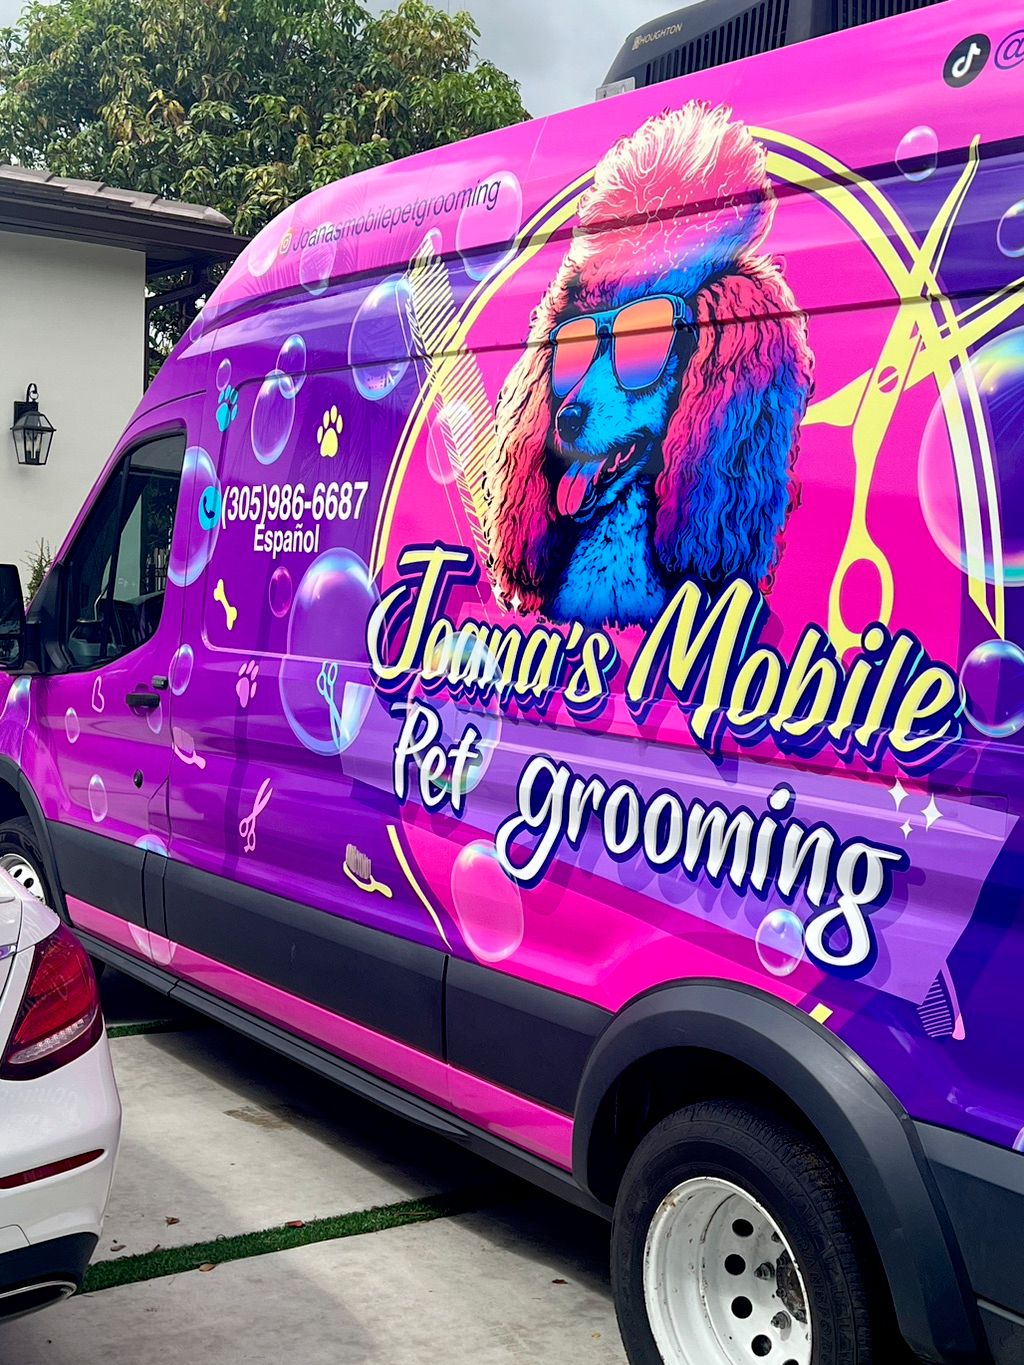 Joana’s mobile pet grooming llc